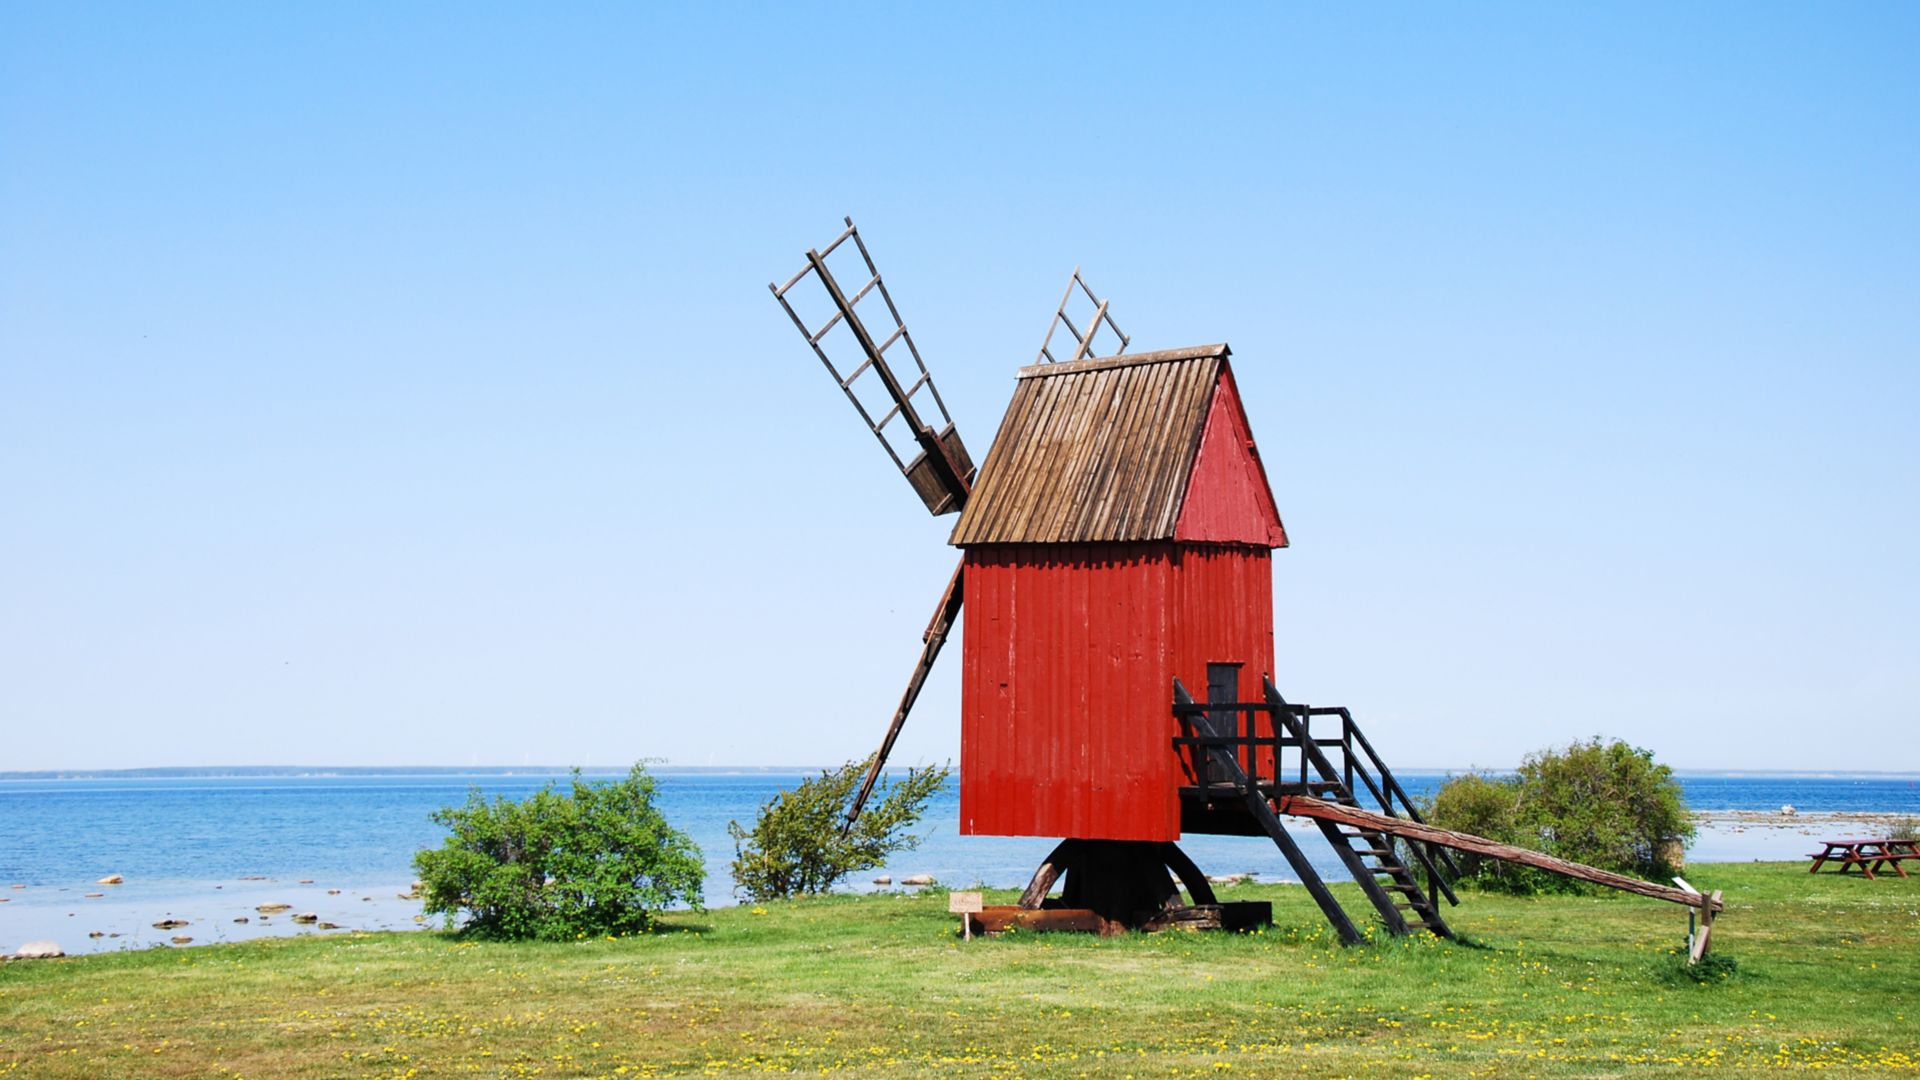 Viejo molino de viento tradicional de madera de color rojo junto a la costa de la isla sueca de Öland